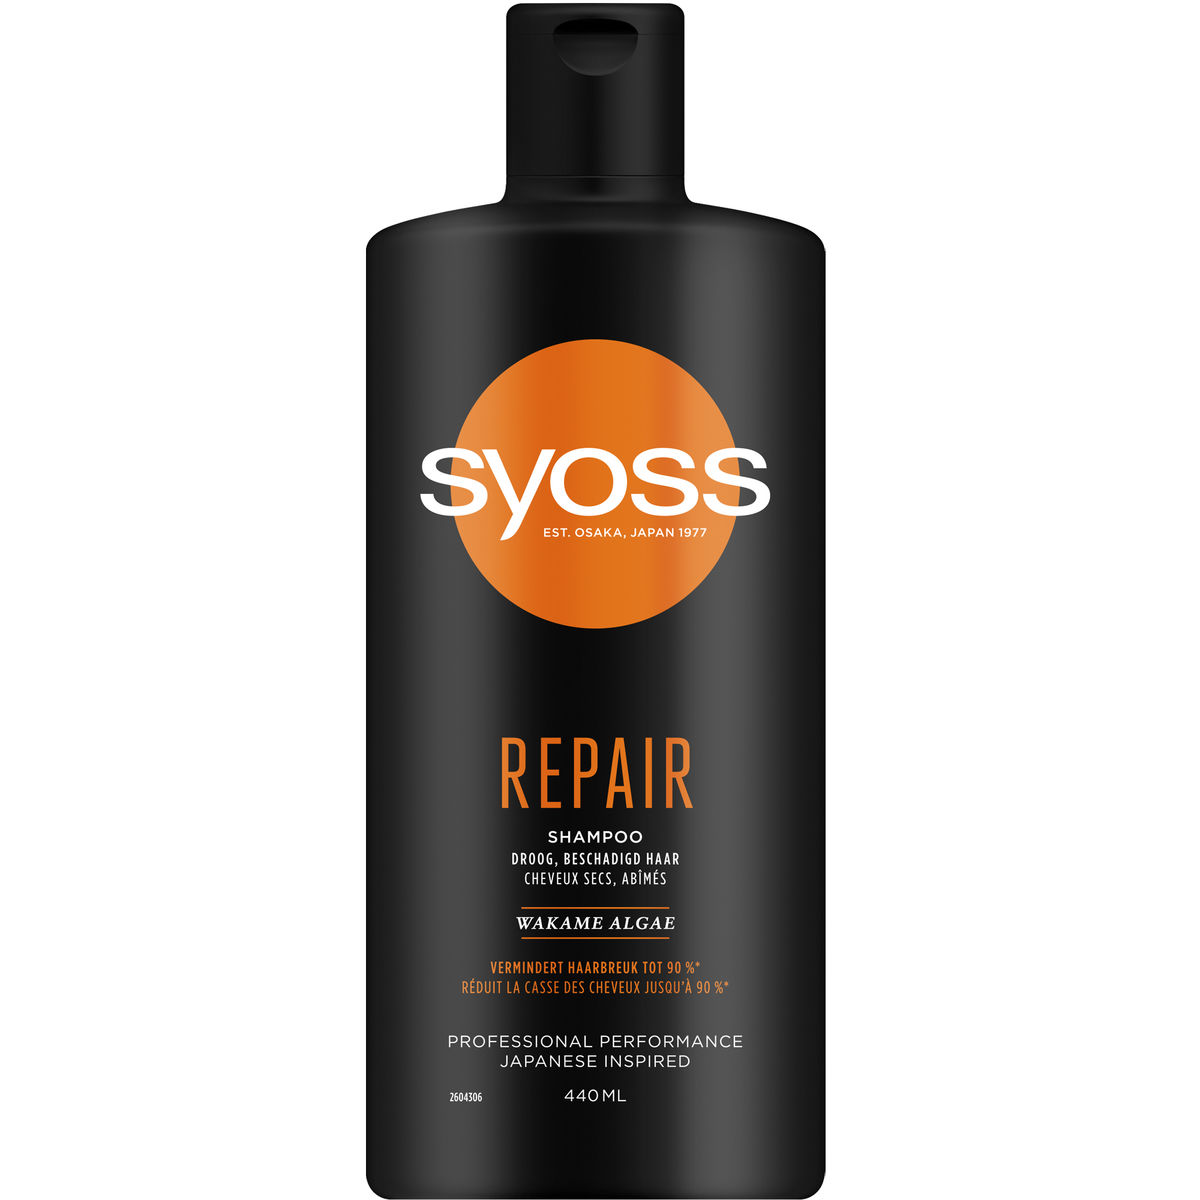 SYOSS Repair Shampoo 440ml